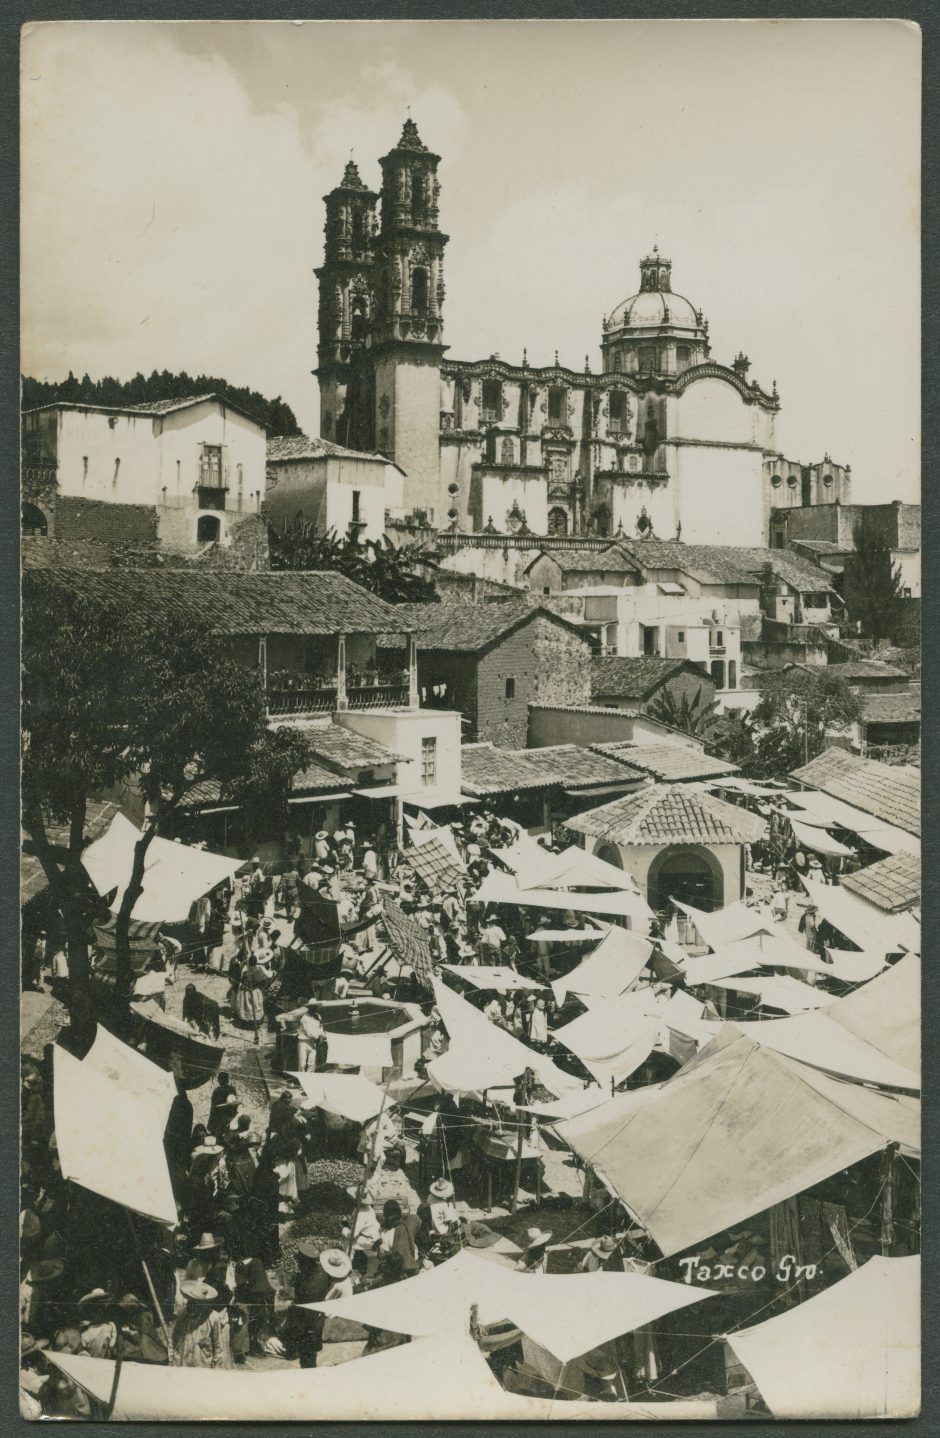 Première carte au dos de laquelle Marguerite Rosmer écrit à Daniel Martinet, le 18 août 1939. Vue de Taxco, Mexique